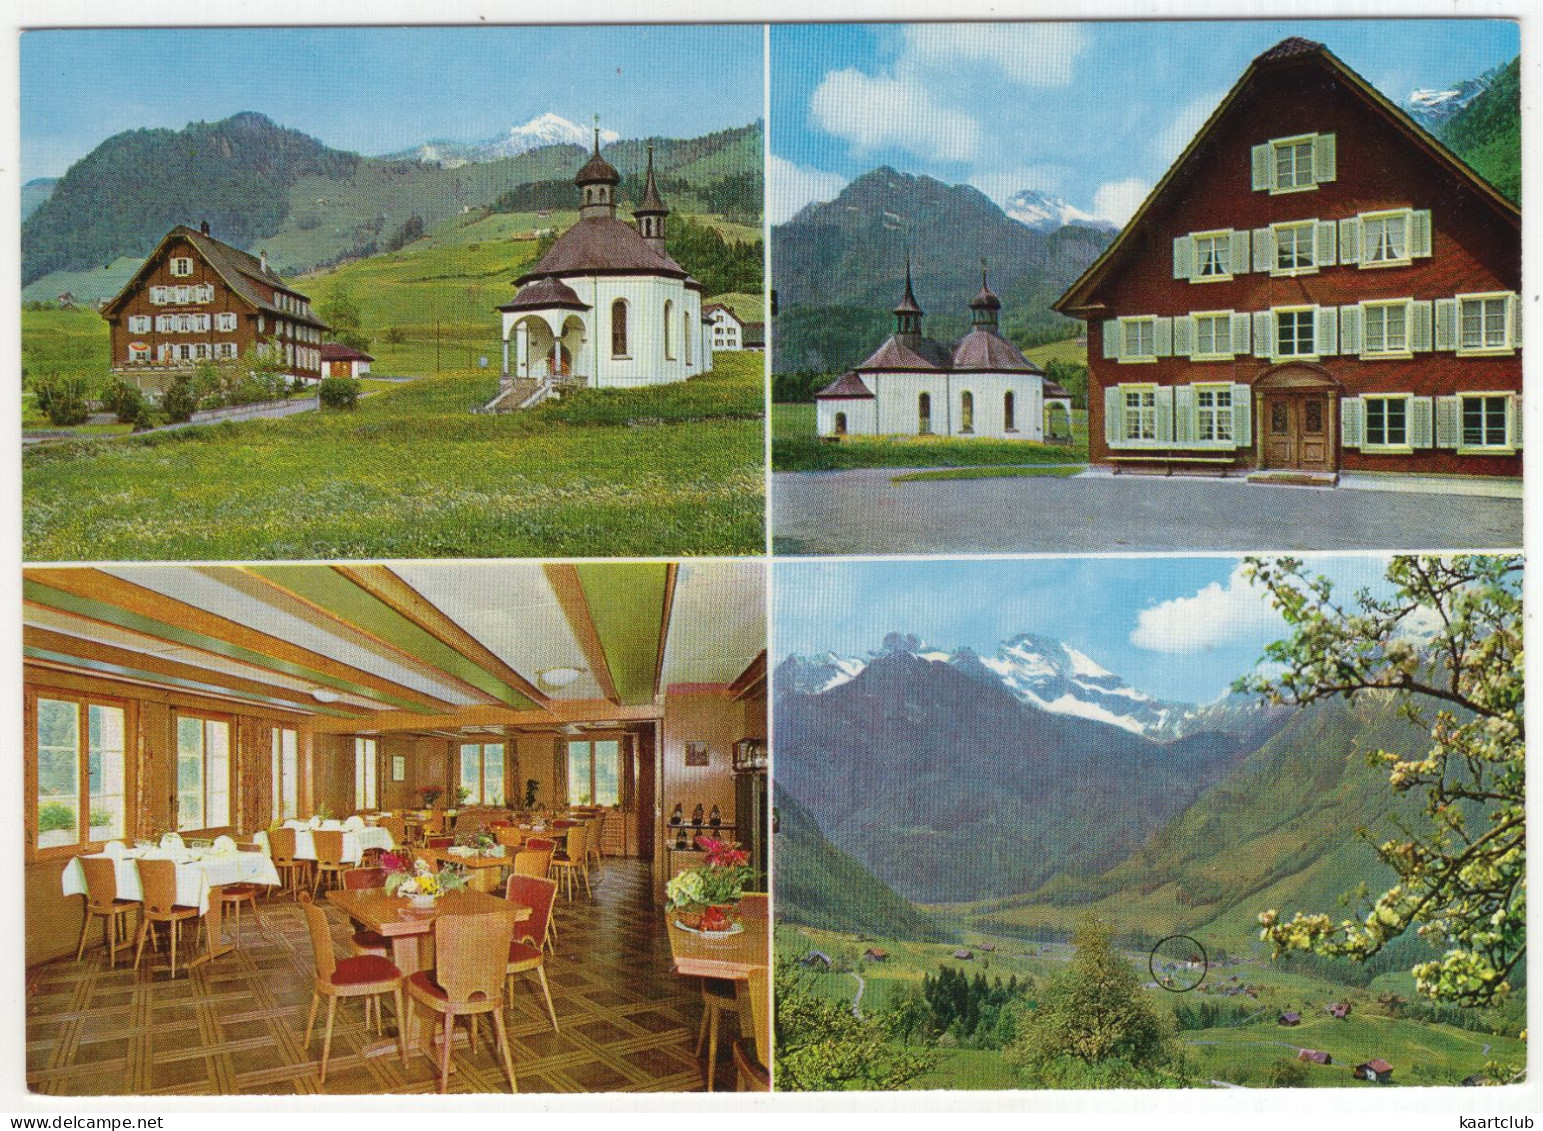 Grafenort - Gasthaus 'Grafenort' - Fam. Amstutz-Amrhein - (Schweiz-Suisse-Switzerland) - Engelberg